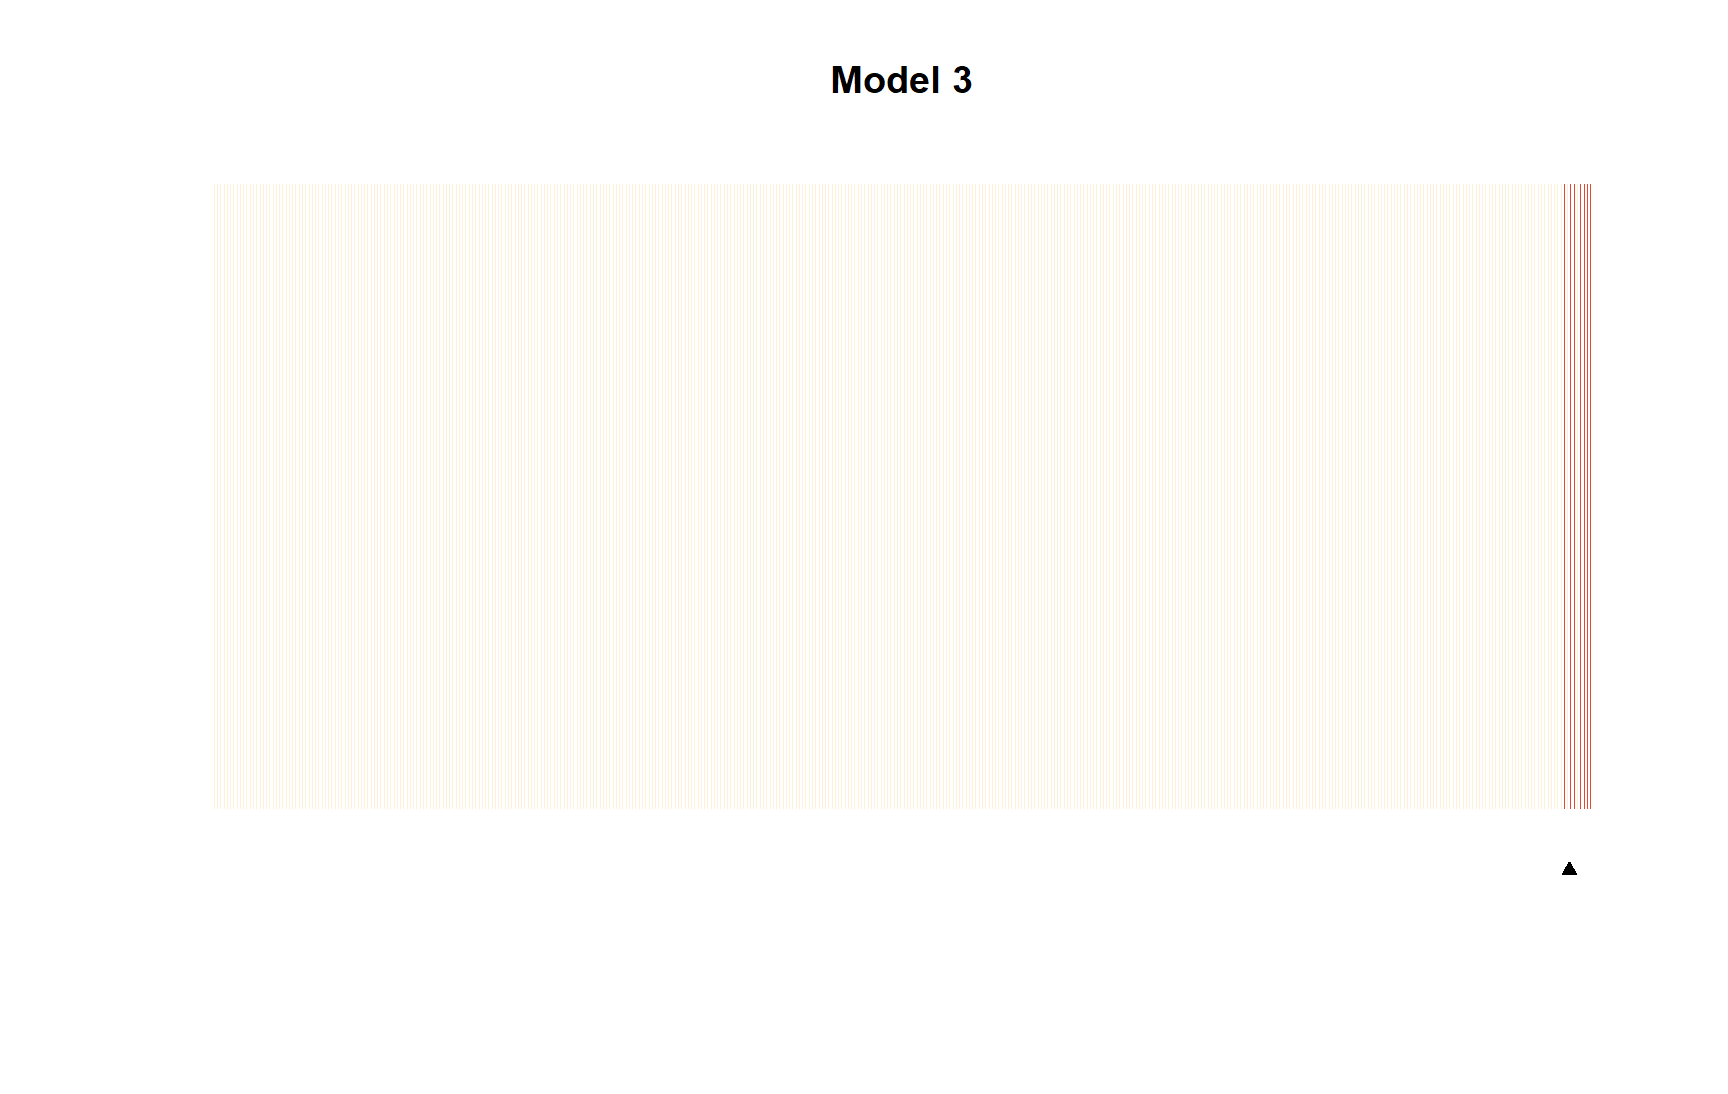 Separation plots de modelos 1 y 3